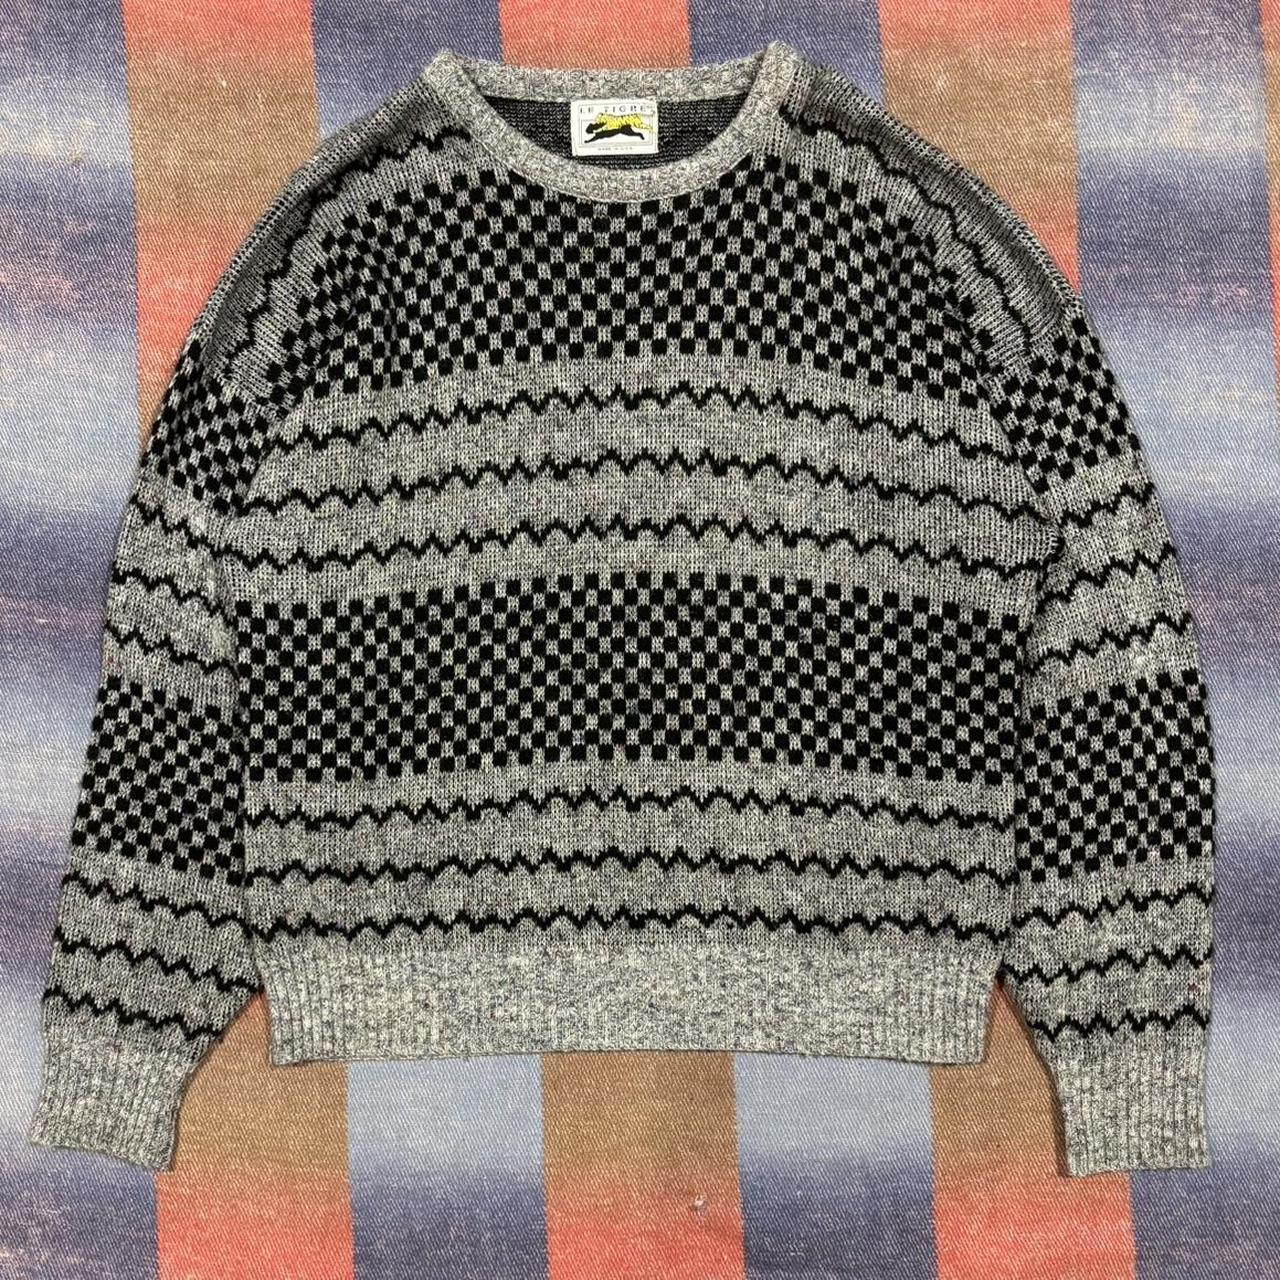 Vintage Boxy Knit Le Tigre Patterned Sweater - Size... - Depop